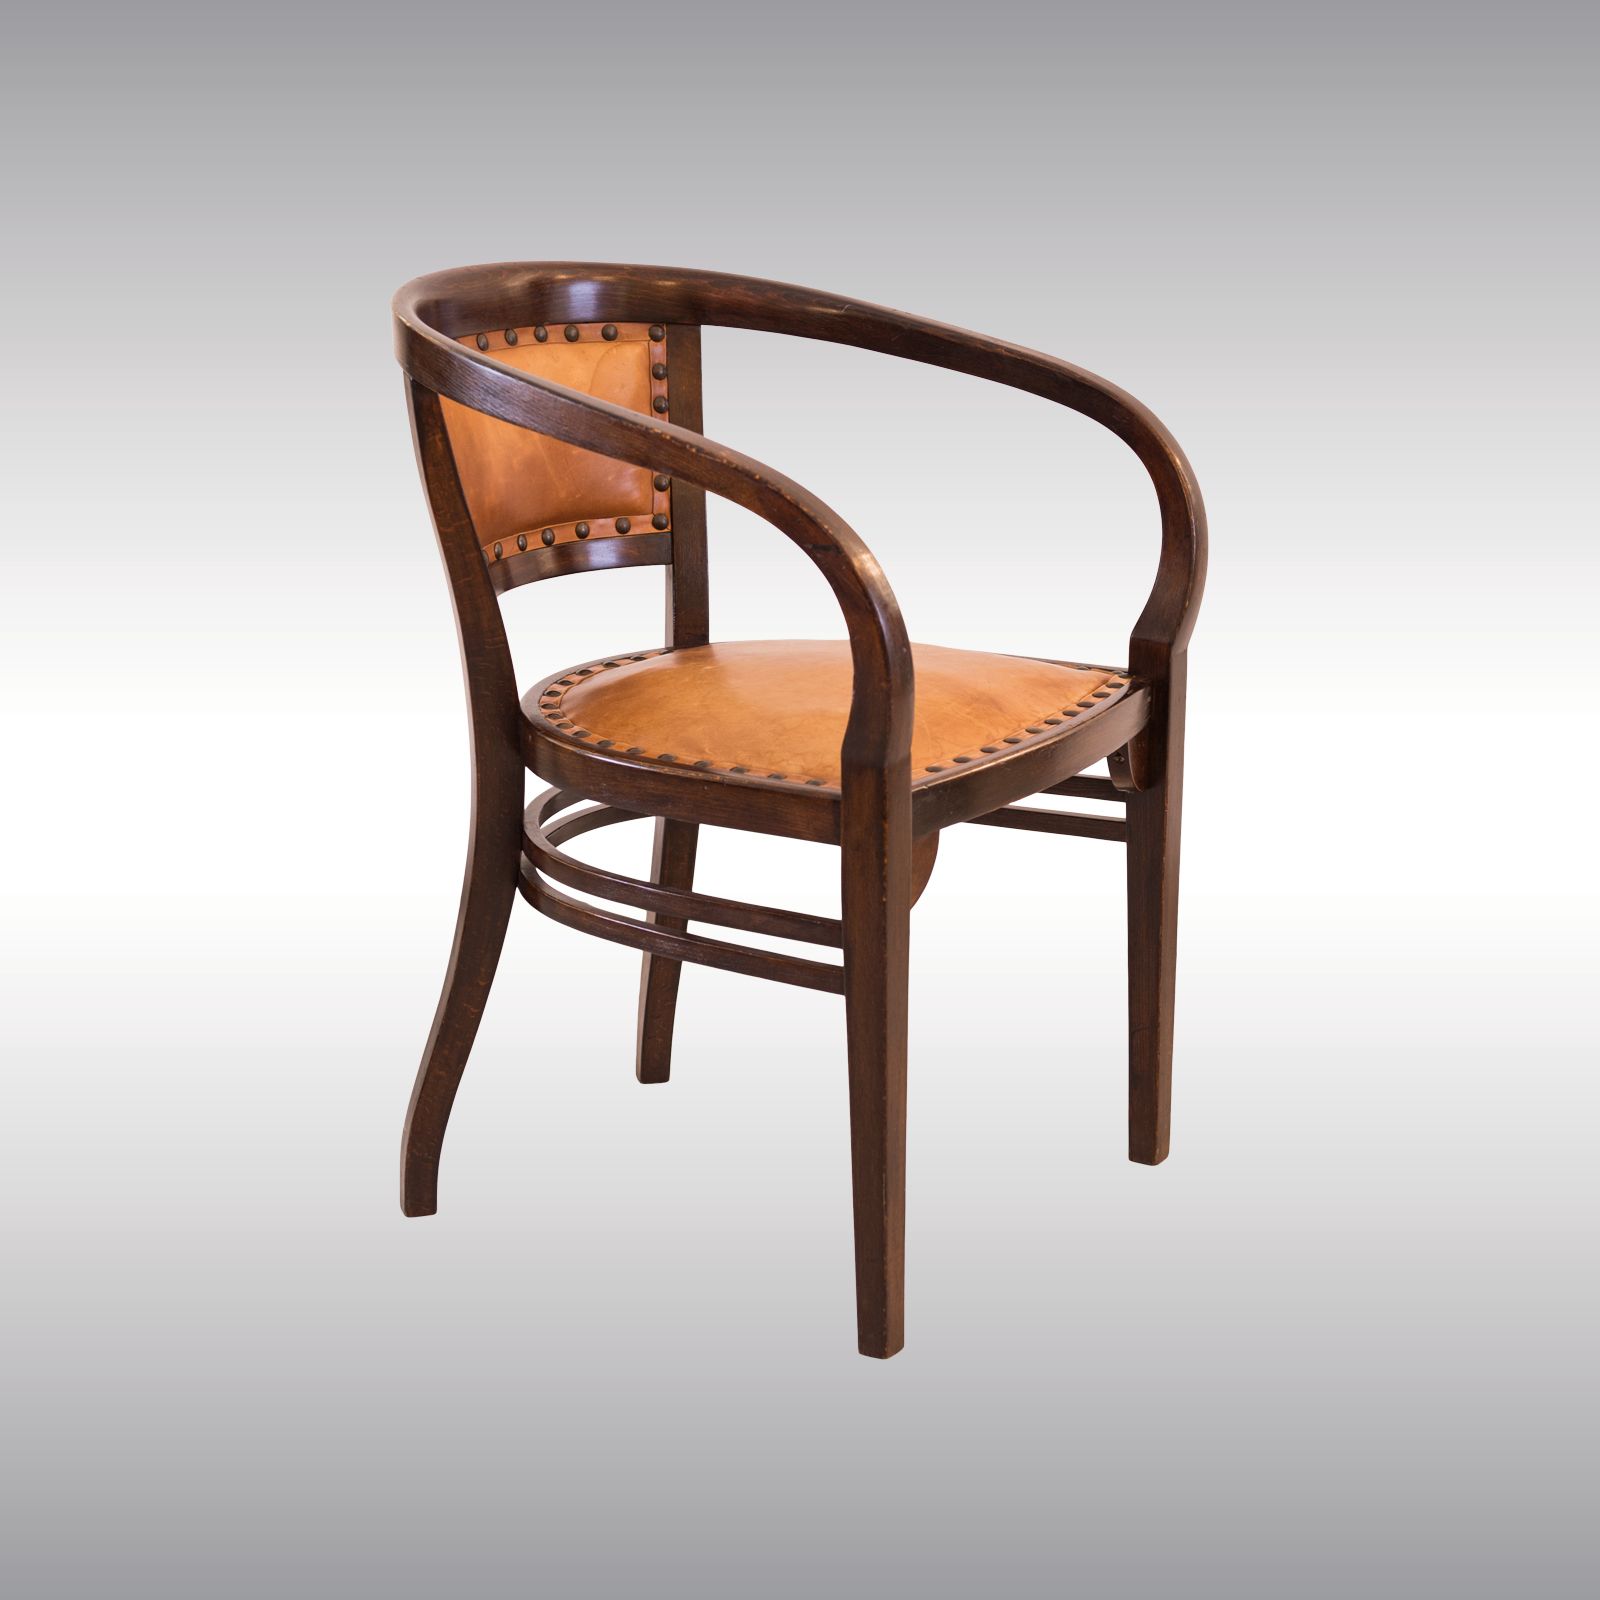 WOKA LAMPS VIENNA - OrderNr.: 80031|Besonders seltener und schöner Otto Wagner Sessel von Thonet 1901 - Design: Otto Wagner